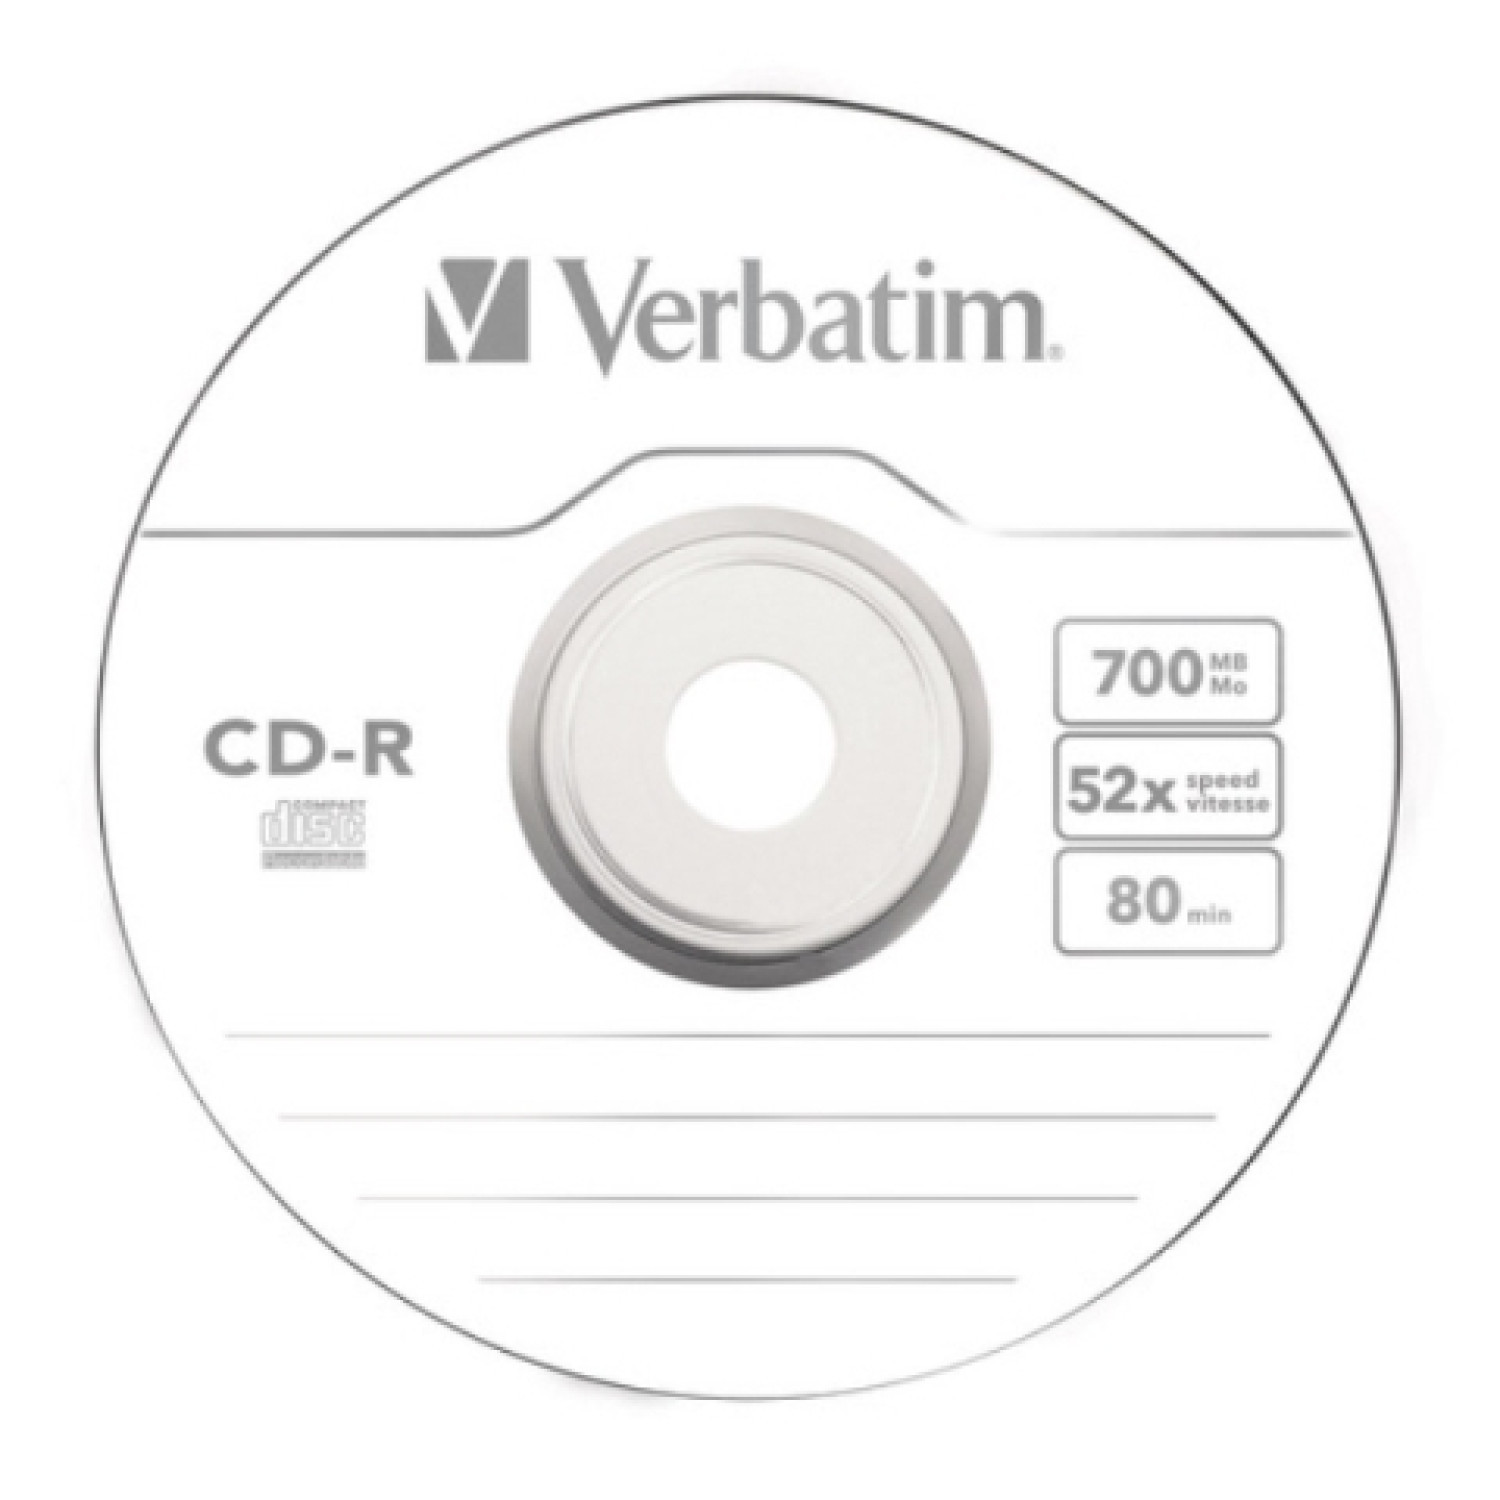 CD-R Verbatim, 700 MB, 52x